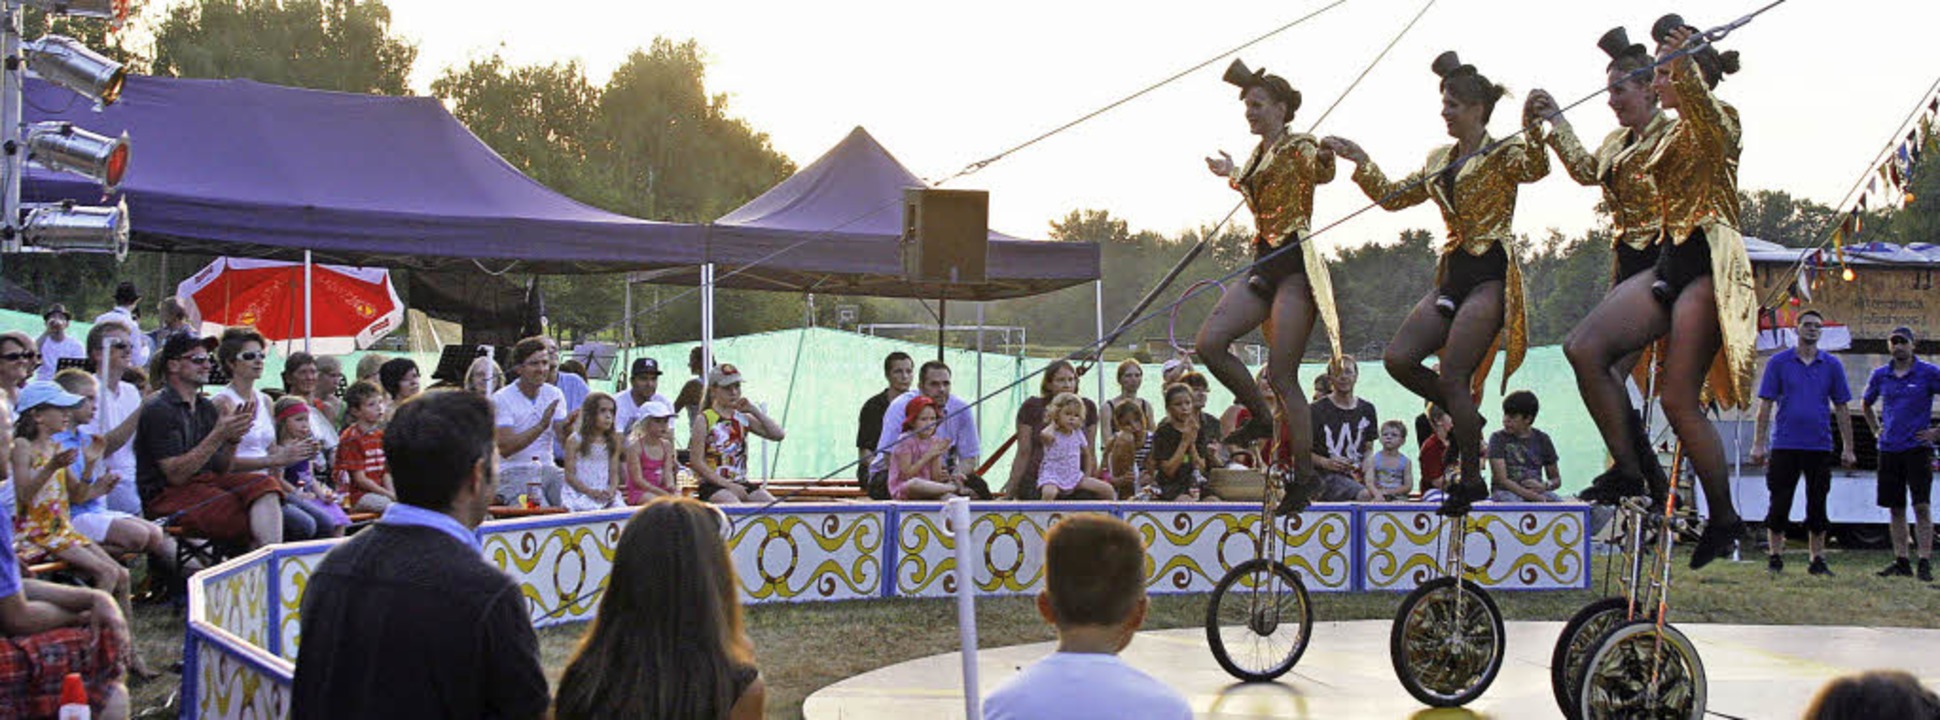 Hoch auf dem Einrad balancierte die Gr...mierenvorstellung des Circus Paletti.   | Foto: Heidi Fössel